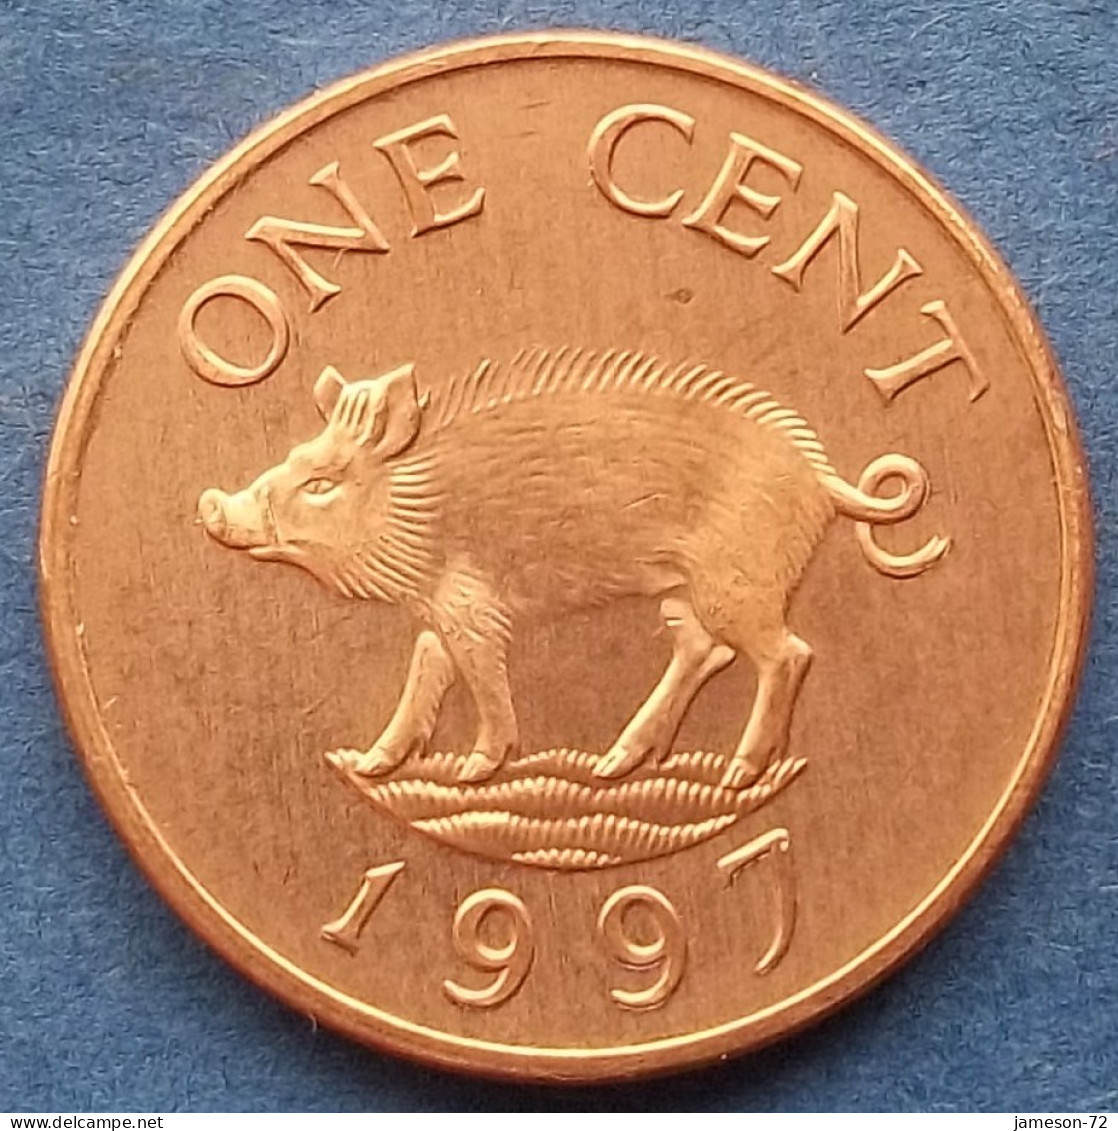 BERMUDA - 1 Cent 1997 "Wild Boar" KM# 44b Elizabeth II Decimal Coinage (1970-2022) - Edelweiss Coins - Bermudes